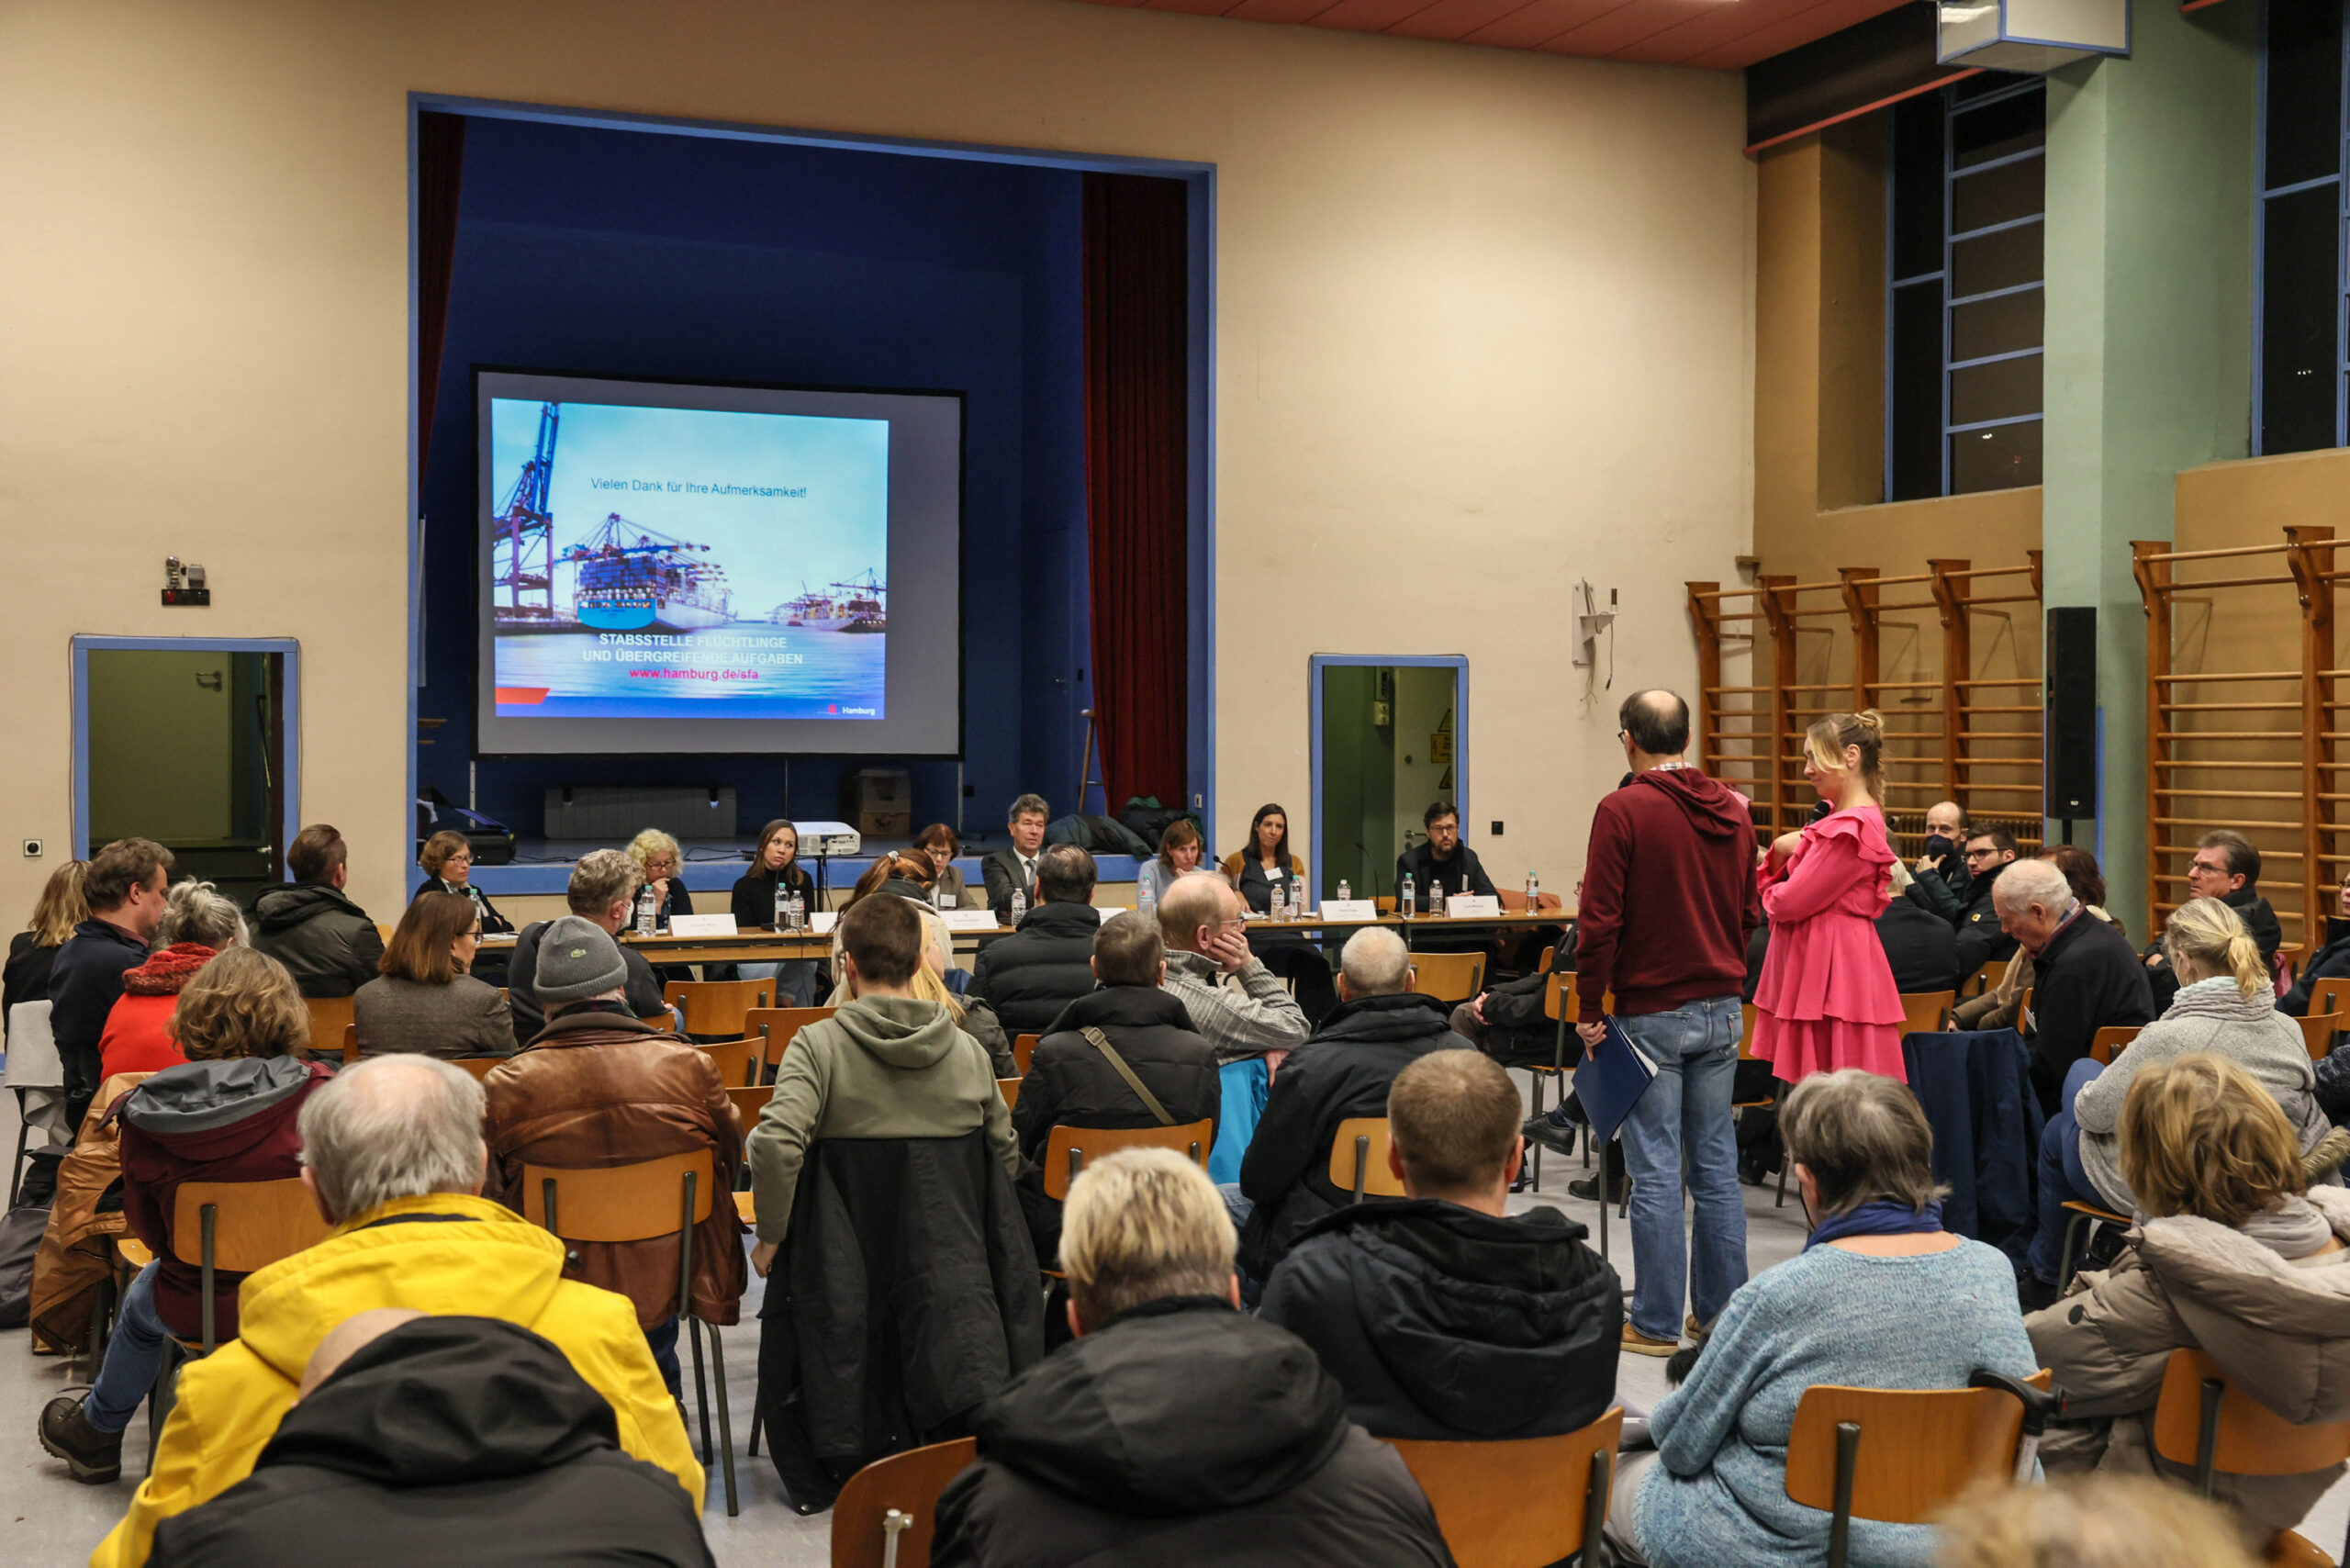 Der Bezirk Wandsbek informiert auf einer Veranstaltung über die Pläne für die neue Unterkunft. Die Stimmung ist angespannt.